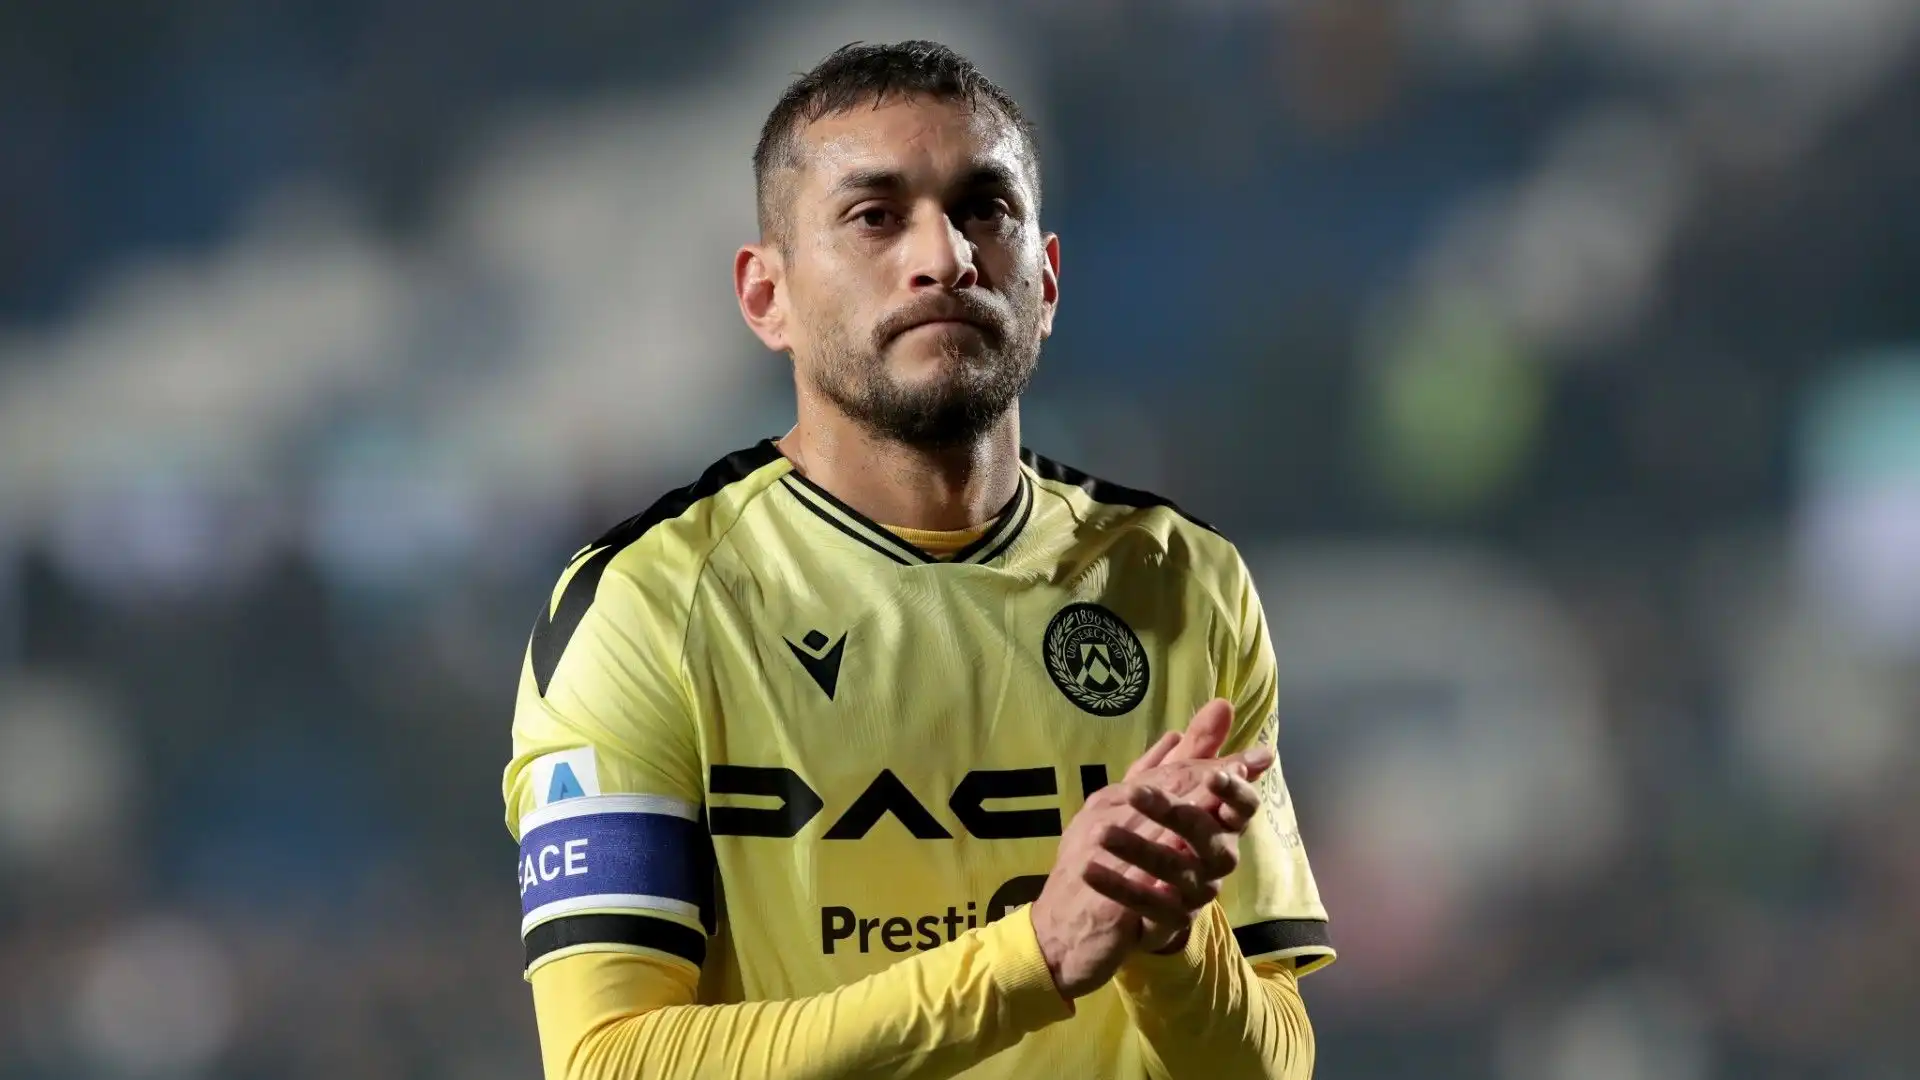 Il calciatore è svincolato dopo l'esperienza all'Udinese